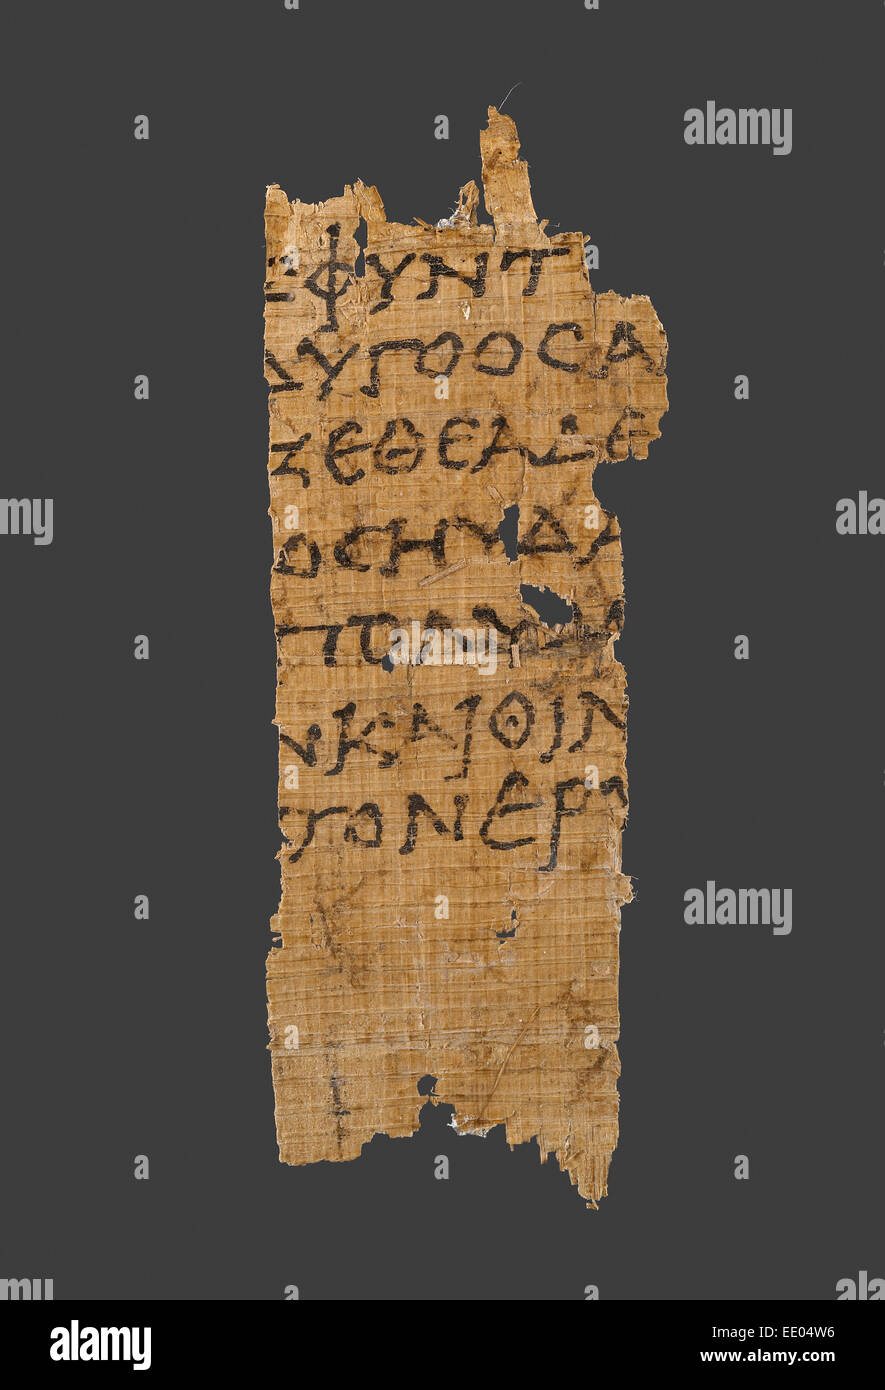 Frammento dell'Odissea di Omero; sconosciuta; Egitto, Africa; 1° secolo a.c.; papiro Foto Stock